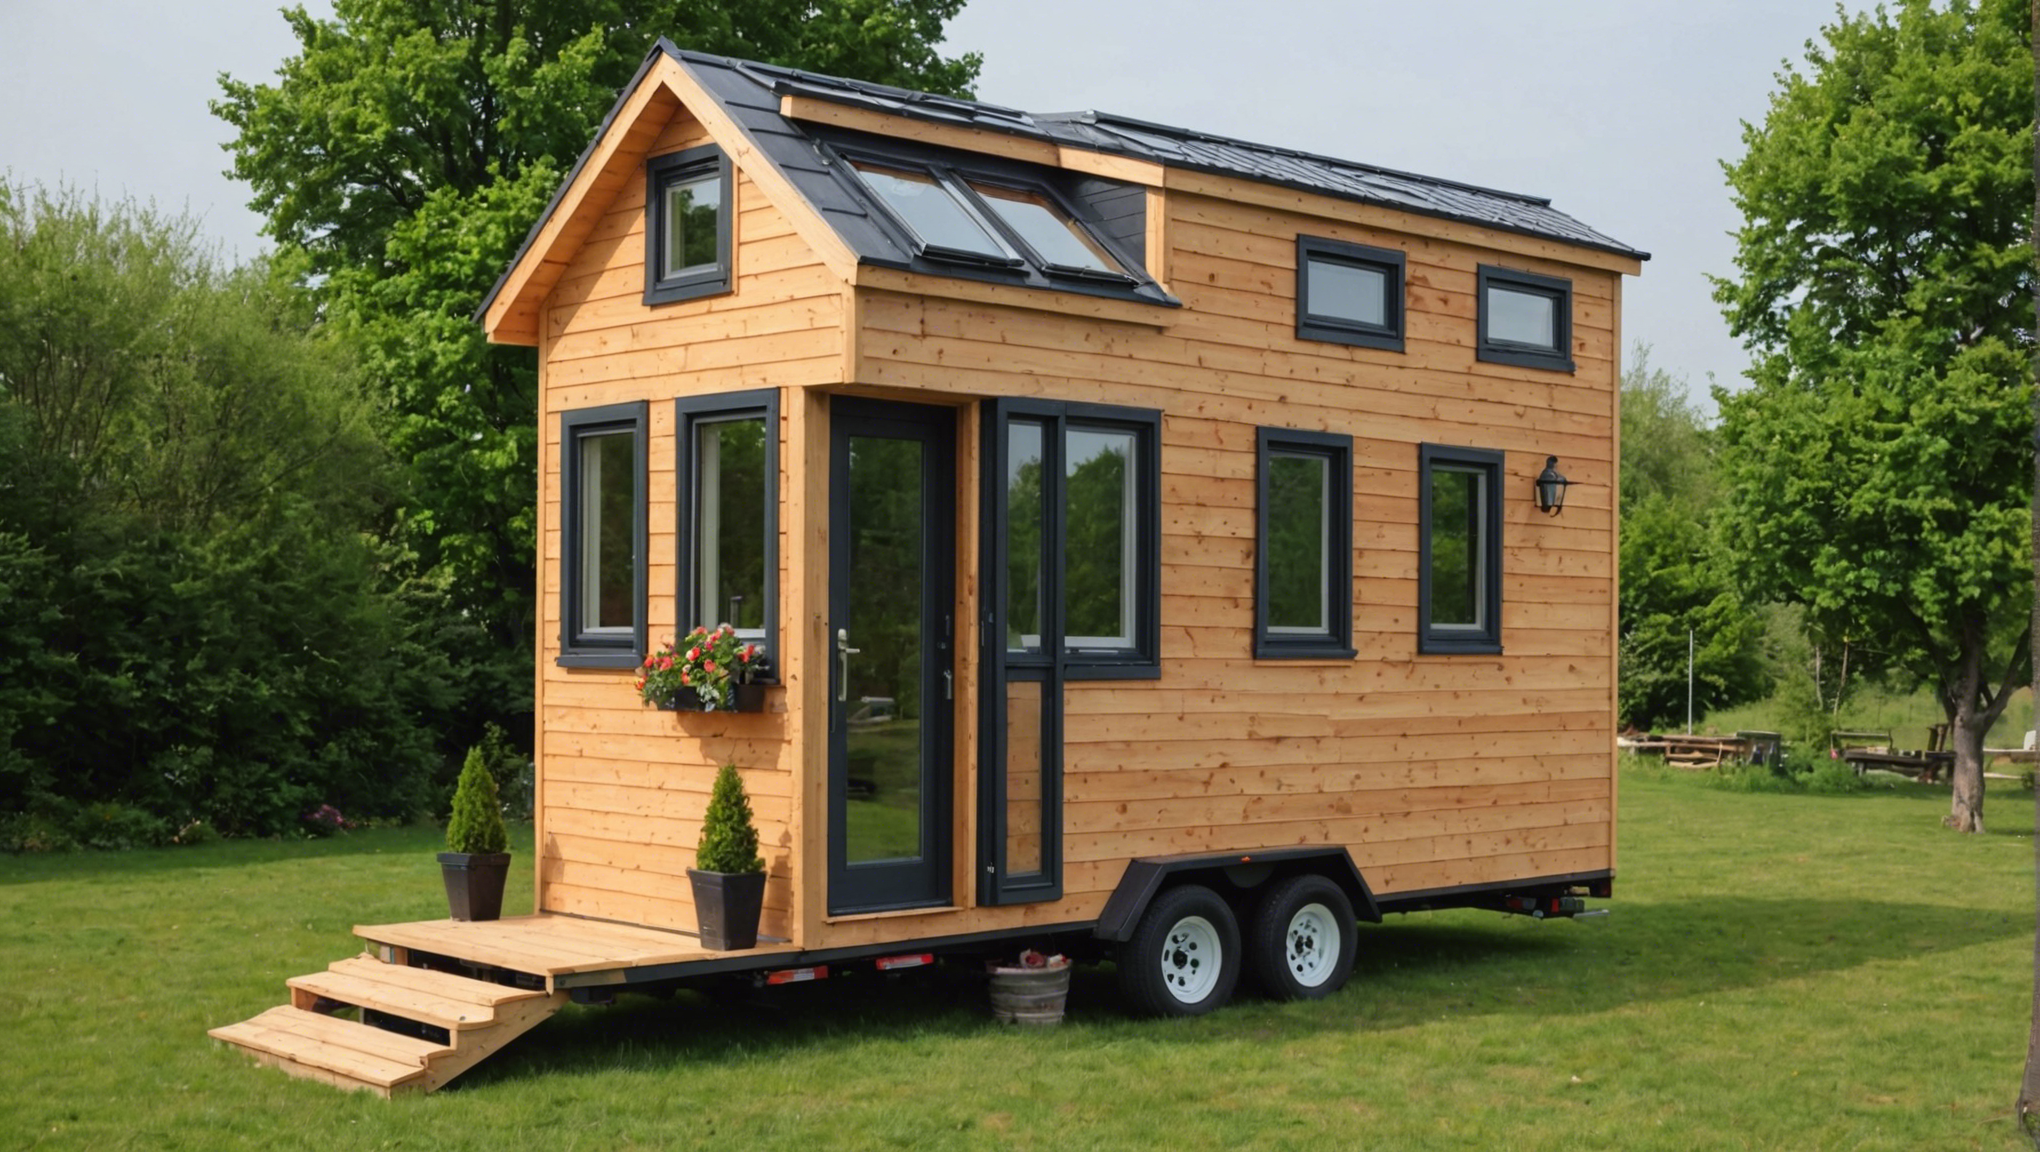 découvrez ce qu'est une tiny house et les raisons pour lesquelles vous devriez envisager d'en construire une pour vivre de manière plus écologique et économique.